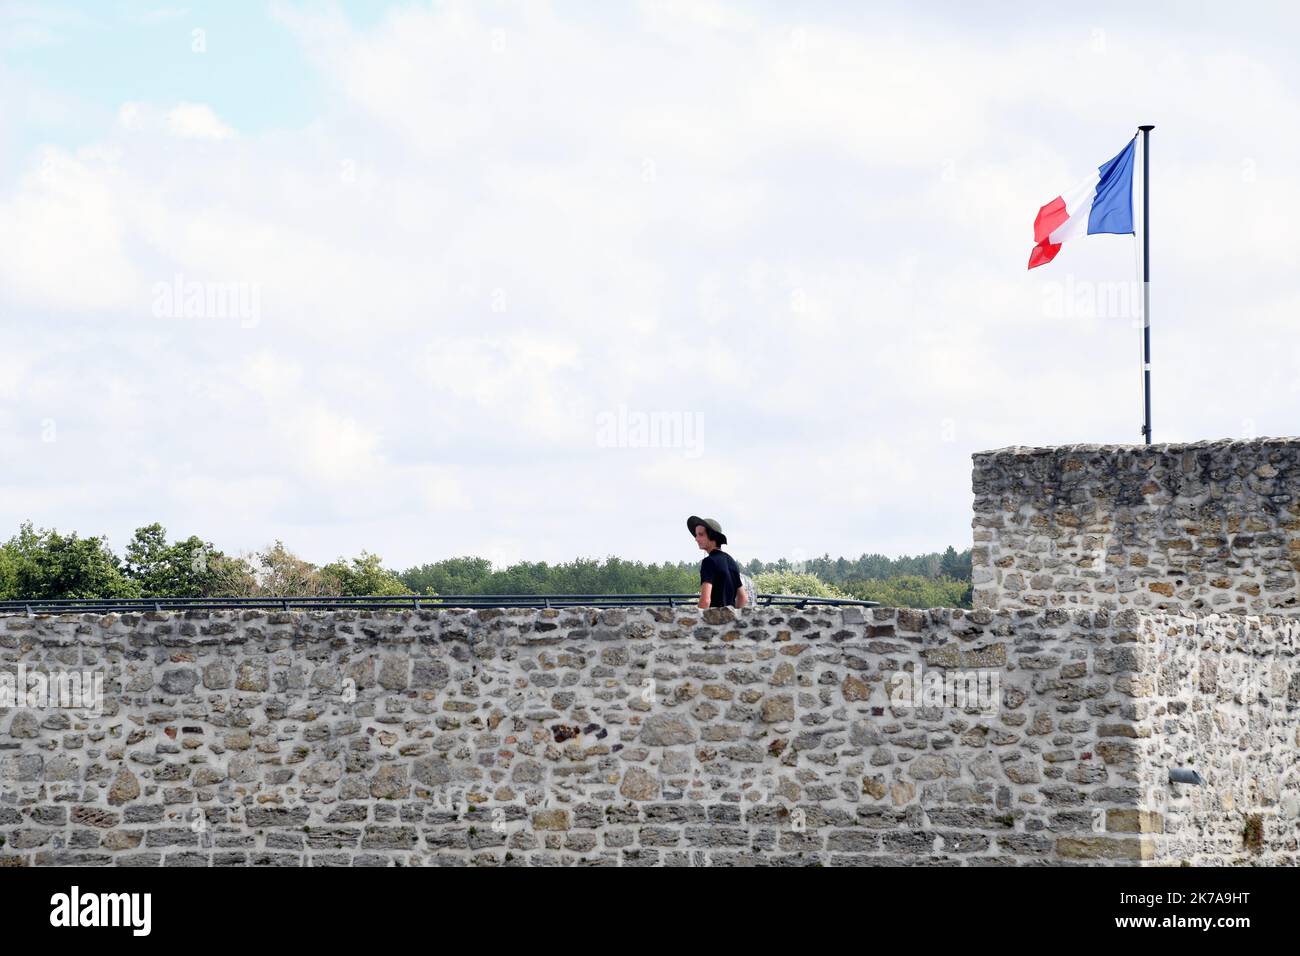 ©PHOTOPQR/VOIX DU NORD/1 ; 24/07/2020 ; Condette, le 24/07/2020, visite du Château d'Hardelot, centre culturel de l'Entente cordiale à Condette PHOTO ZACK AJILI LA VOIX DU NORD - Château de Hardelot, connu localement sous le nom de Château d'Hardelot, se trouve dans un champ à côté du village de Condette, dans le pas-de-Calais en France. Le château a été pris et repris plusieurs fois par les Français, les Anglais et les Bourguignons. Au 17th siècle, le Cardinal Richelieu fit démonter le château de Hardelot et le château devint une ferme. Banque D'Images